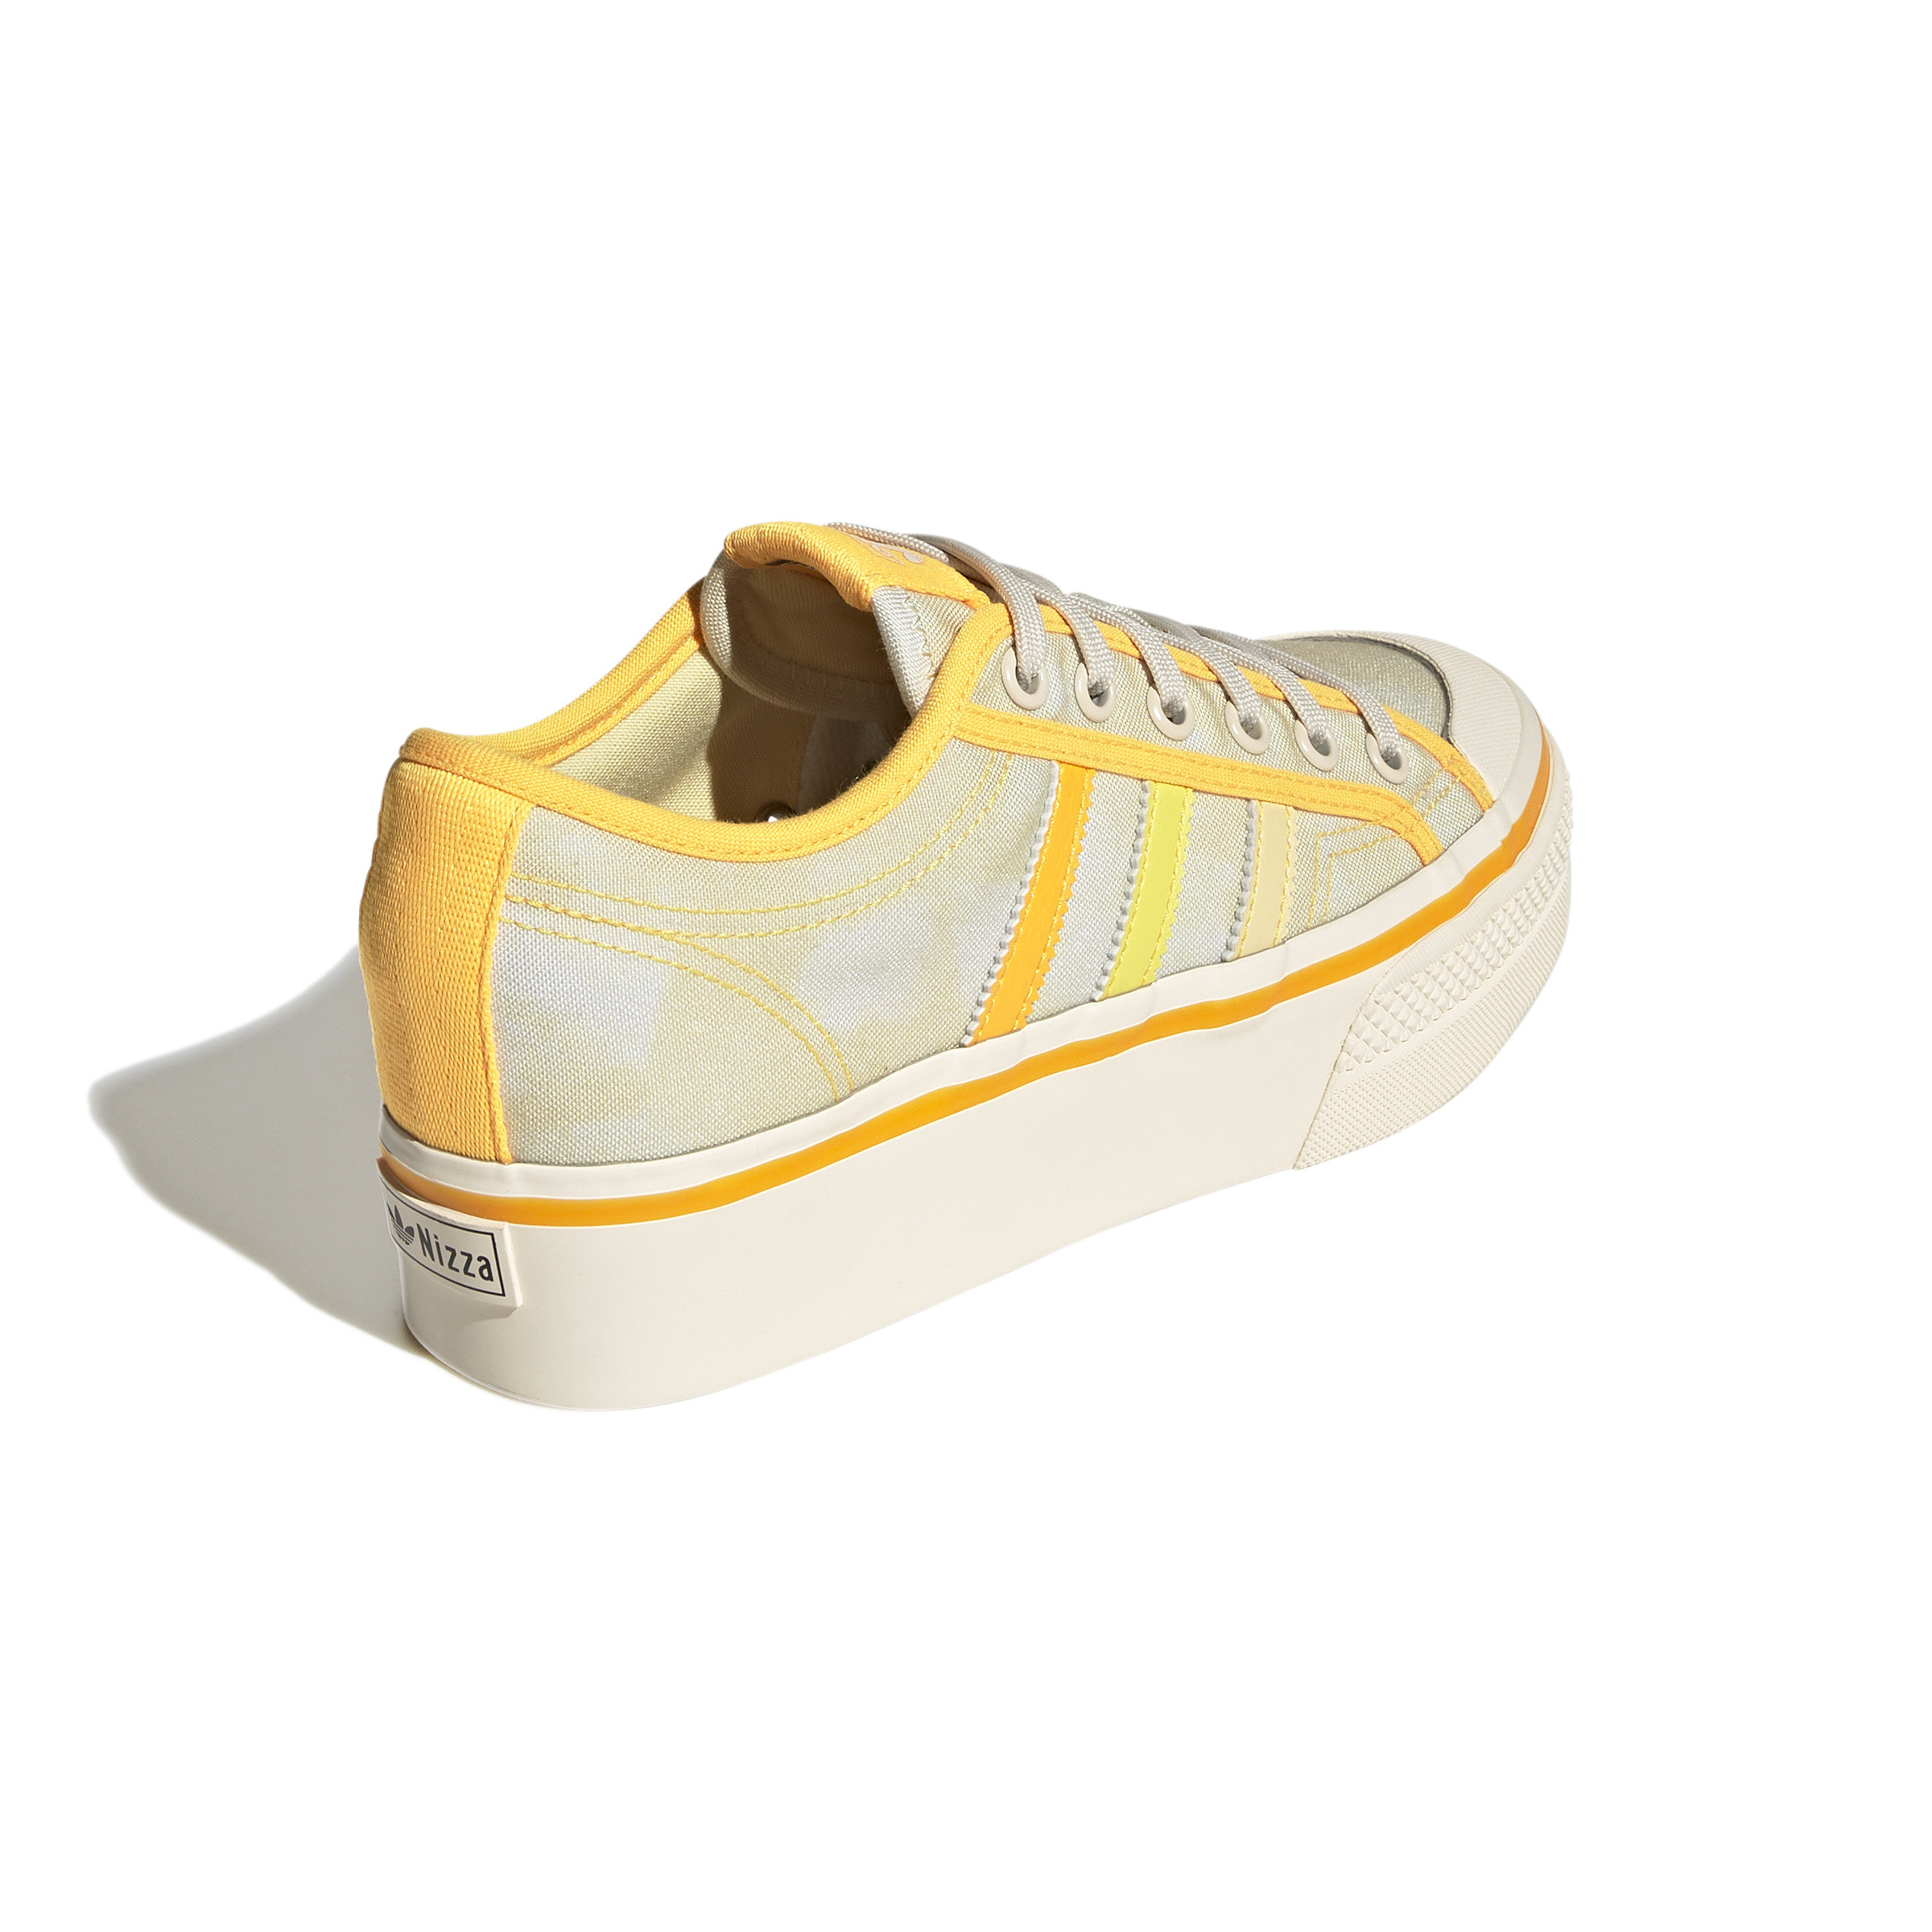 Adidas - Nizza Platform Shoes, Yellow, large image number 5